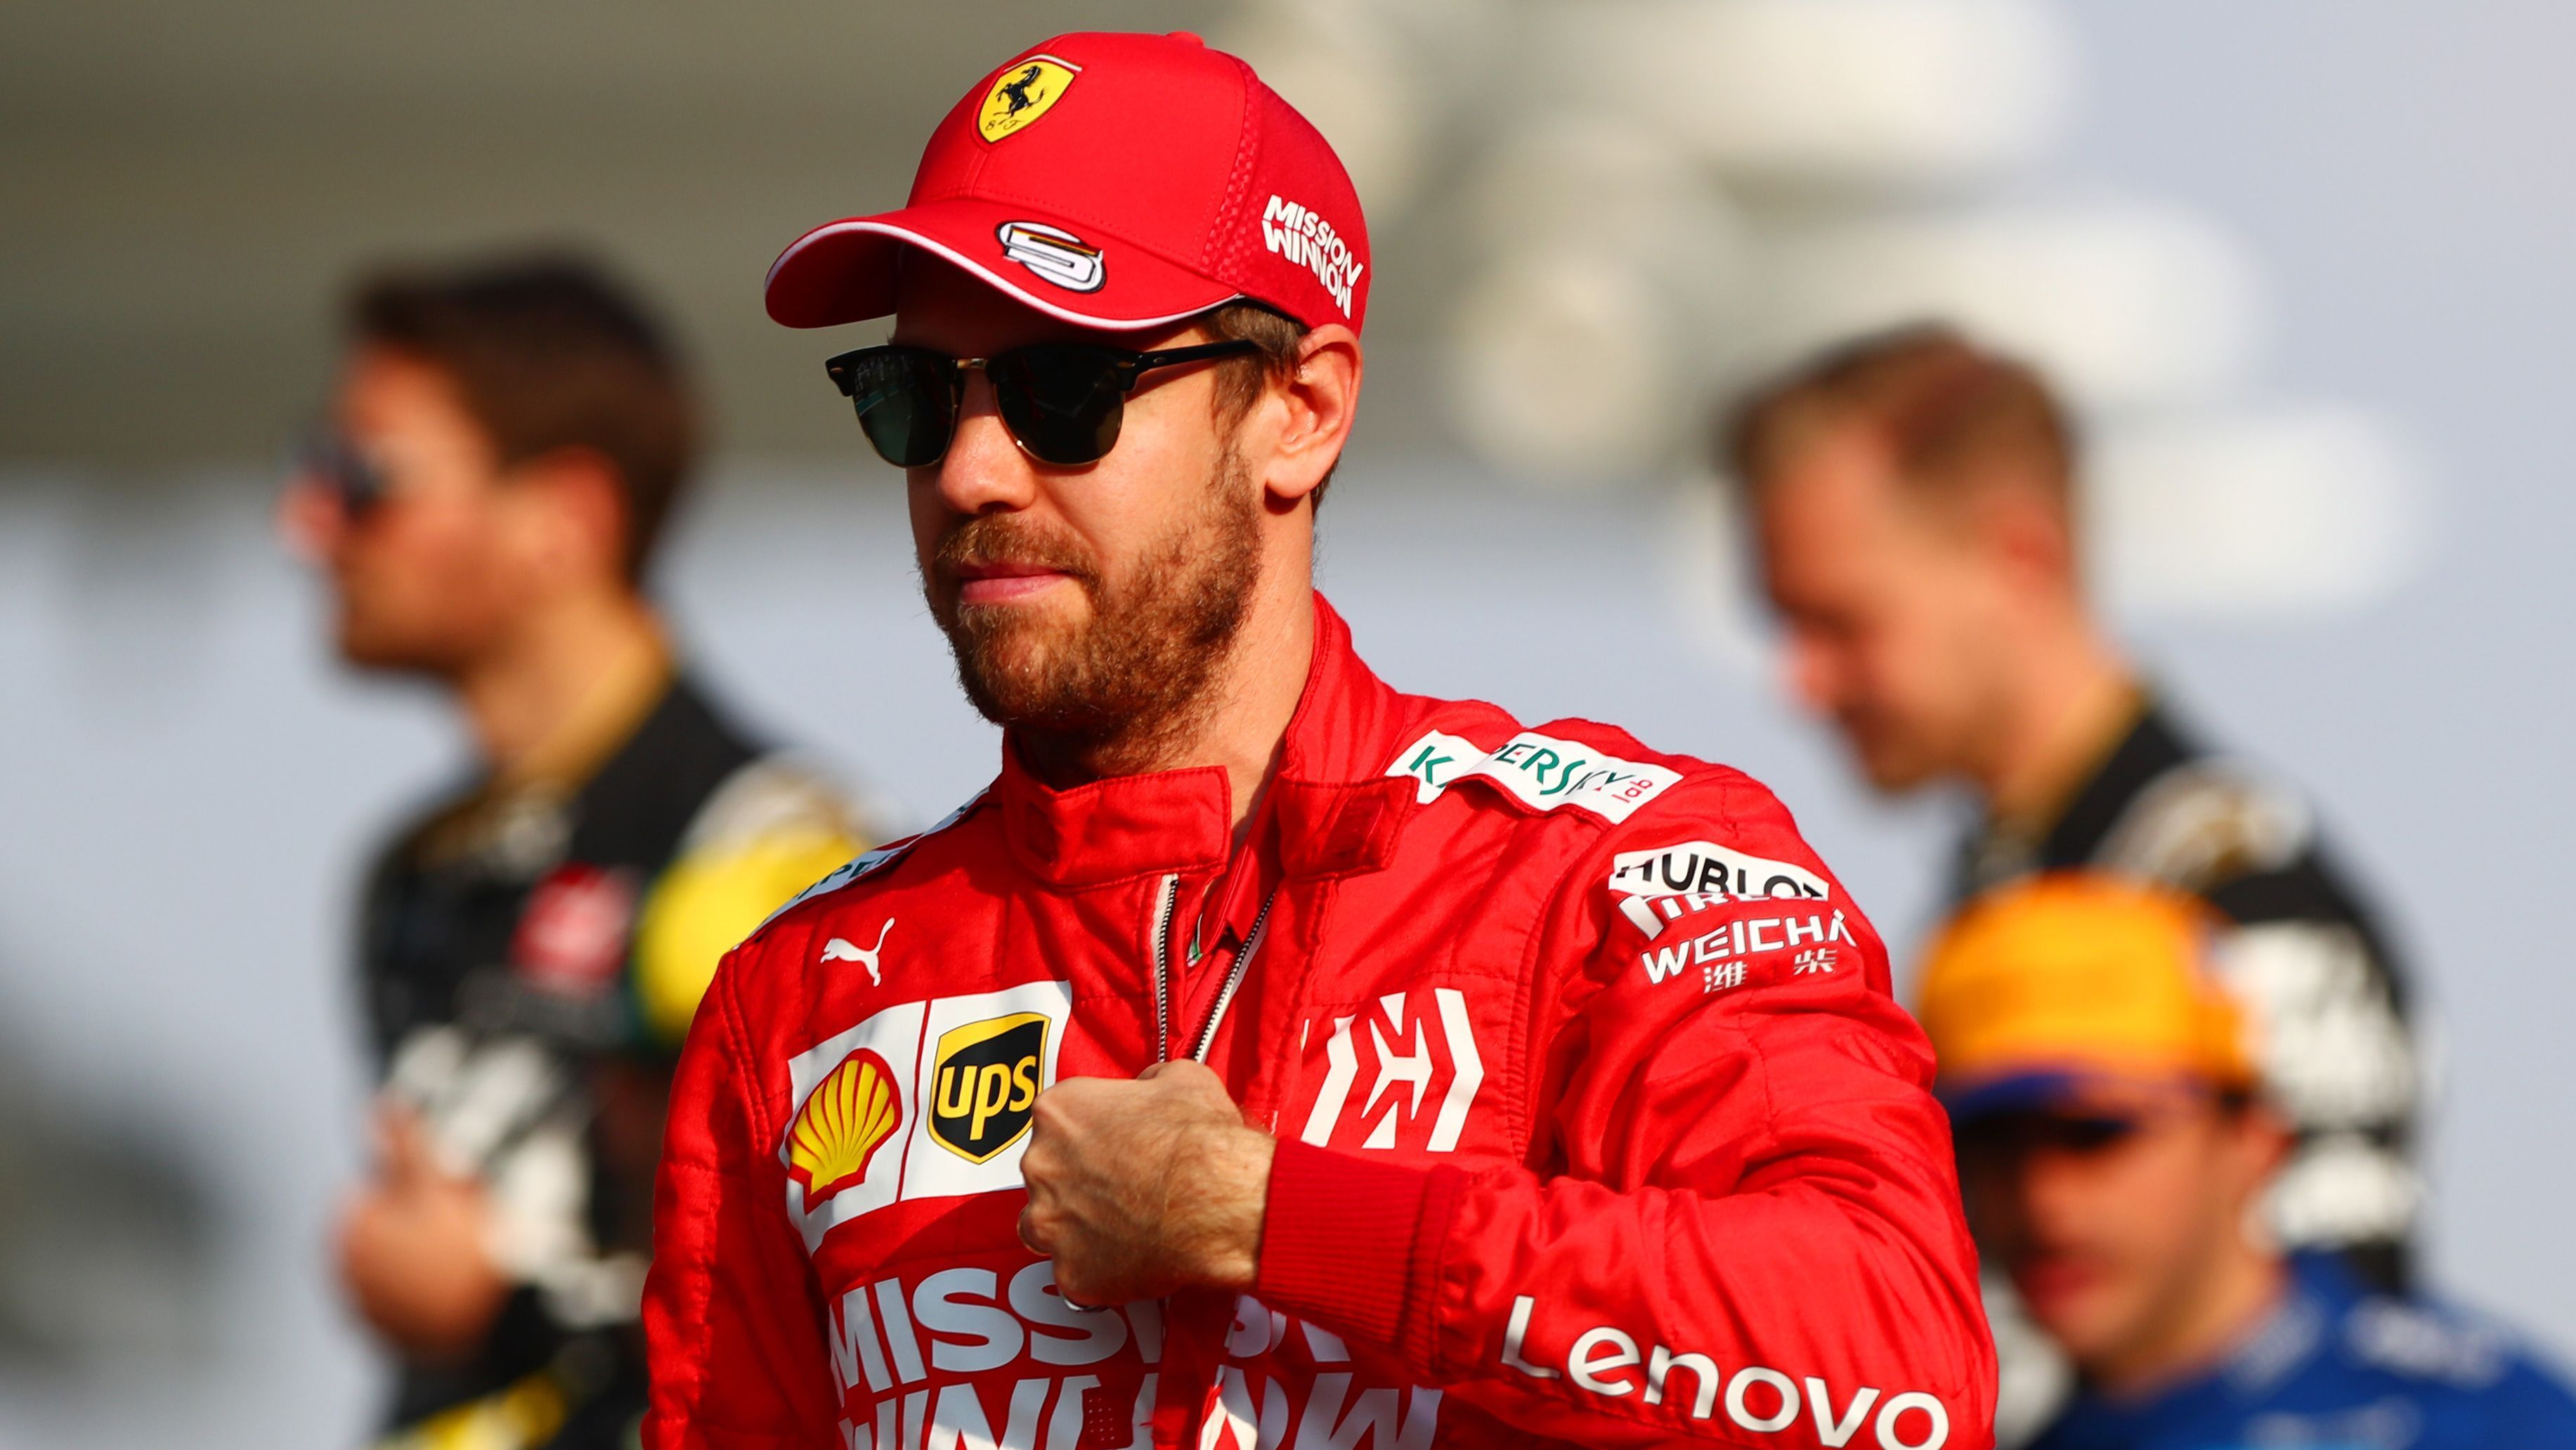 
                <strong>Formel 1: Sebastian Vettels Nachfolge-Kandidaten bei Ferrari</strong><br>
                Nach fünf Jahren bei der Scuderia Ferrari verlässt Sebastian Vettel den Rennstall Ende des Jahres. ran.de zeigt, welche Fahrer für die Vettel-Nachfolge in Frage kommen.
              